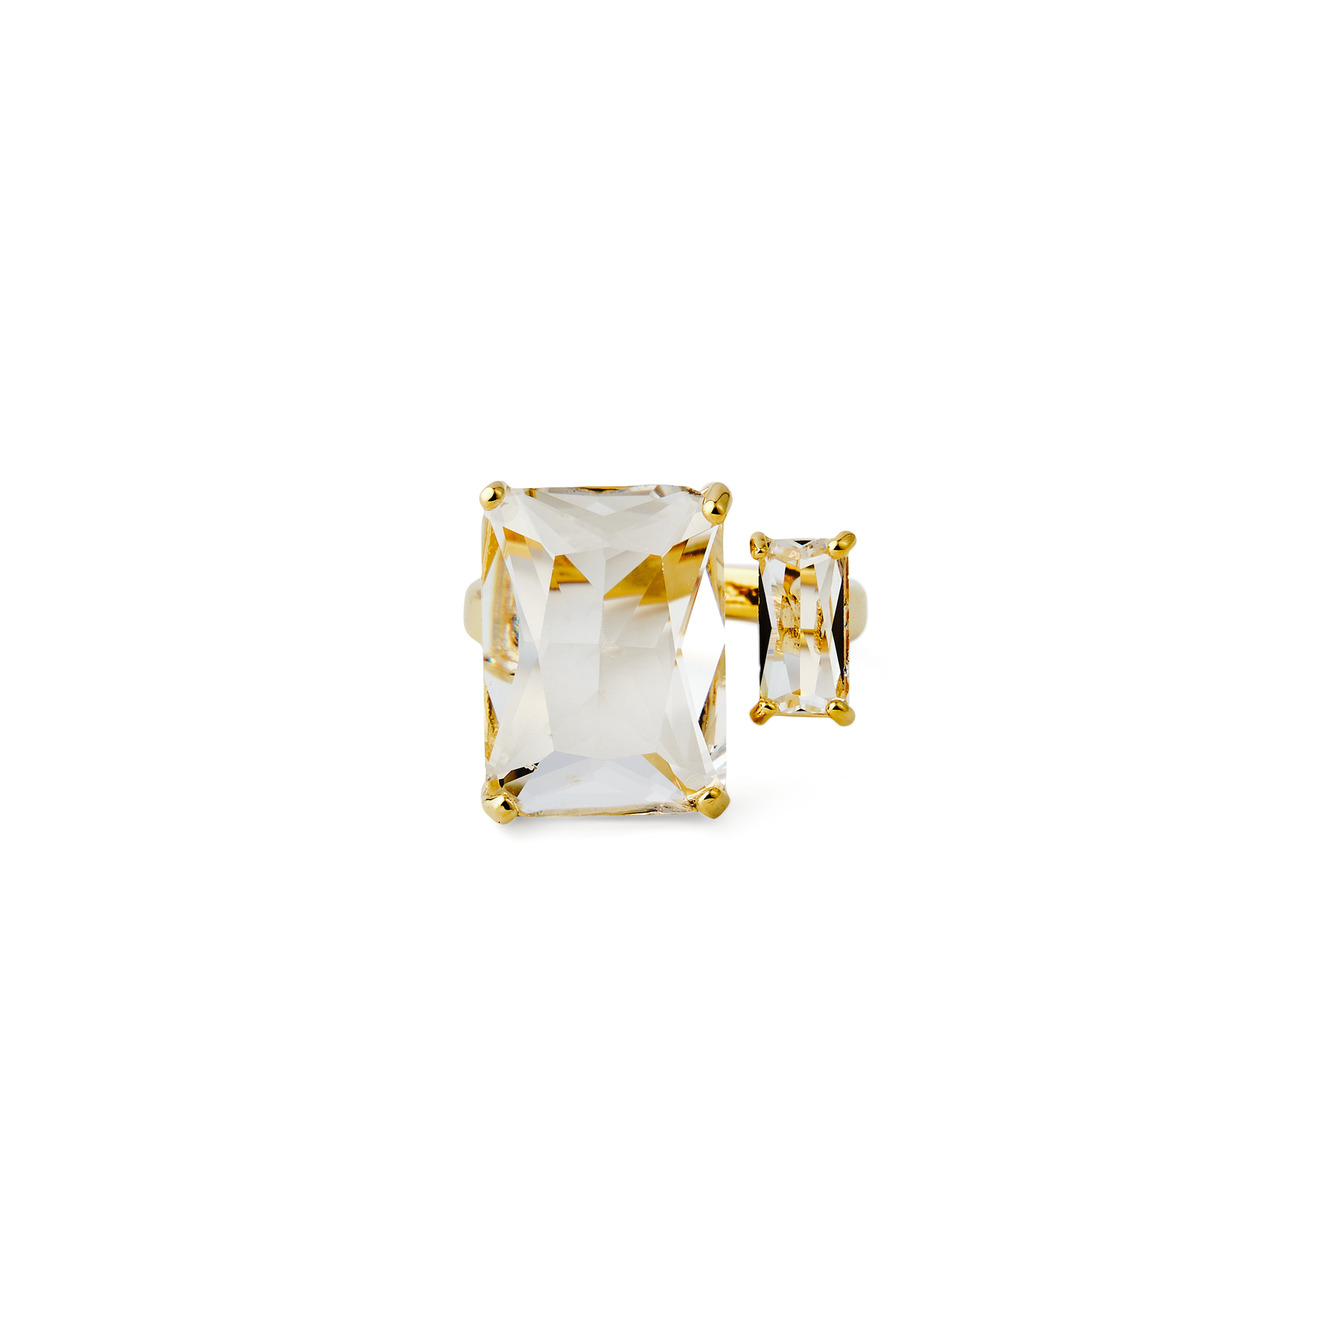 Herald Percy Золотистое кольцо с двумя разными кристаллами herald percy золотистое кольцо печатка с кристаллами